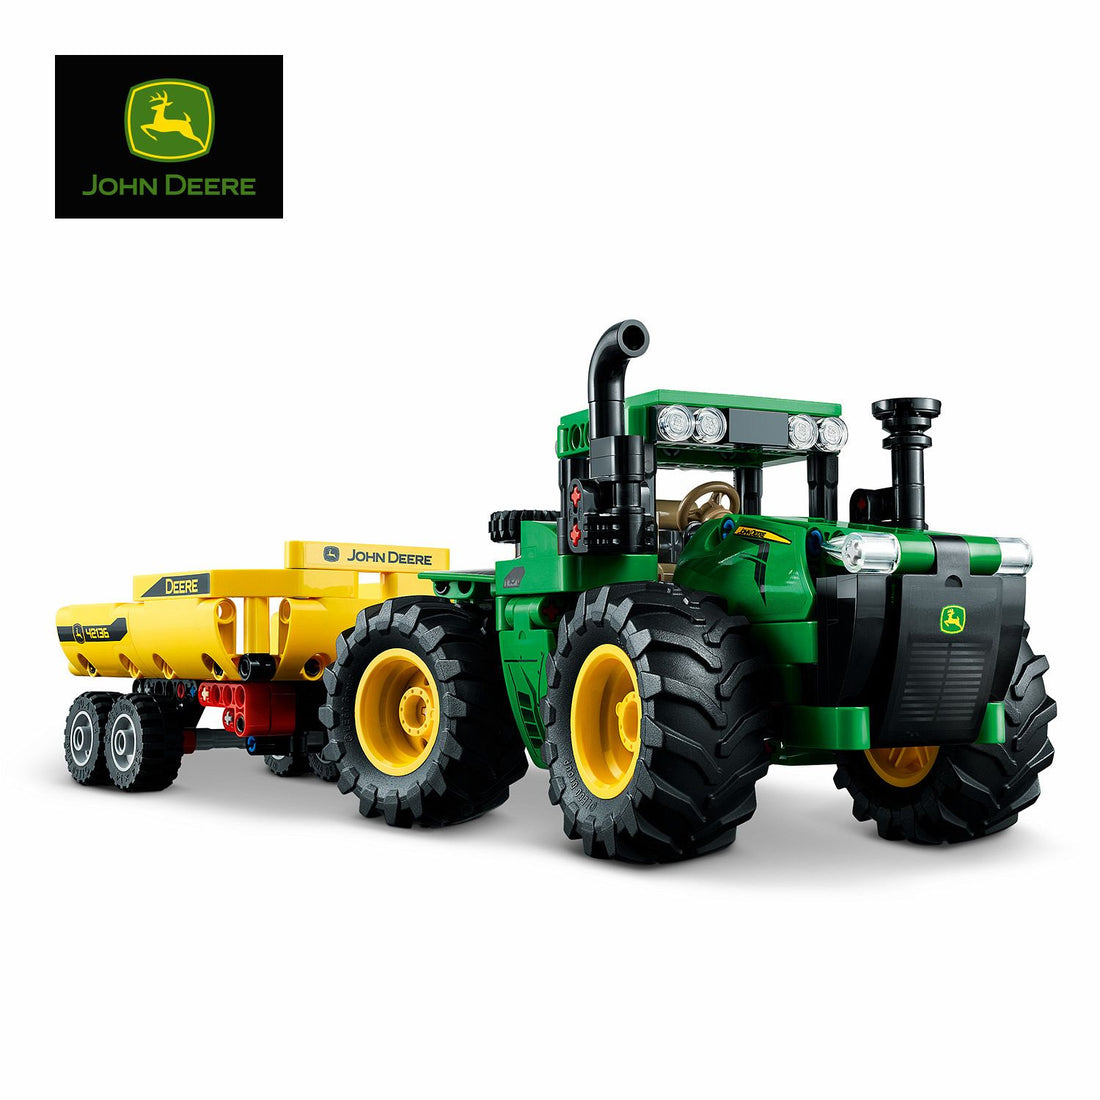 Lego Technic - Traktor